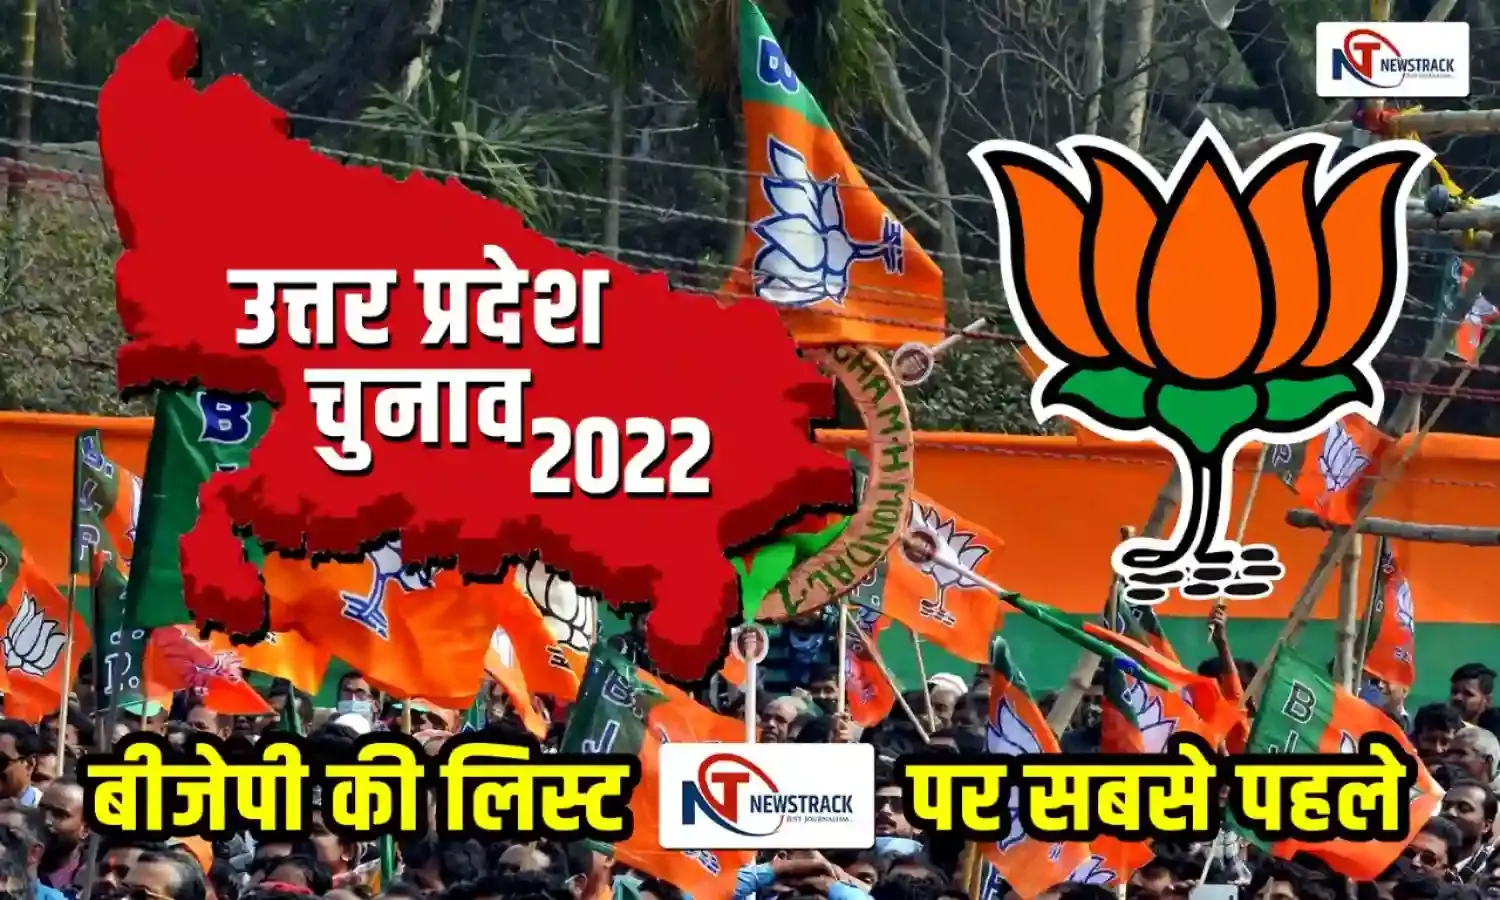 UP Election 2022: बीजेपी के 107 उम्मीदवारों की पहली लिस्ट, गोरखपुर से योगी और सिराथू से केशव प्रसाद मौर्य होंगे प्रत्याशी